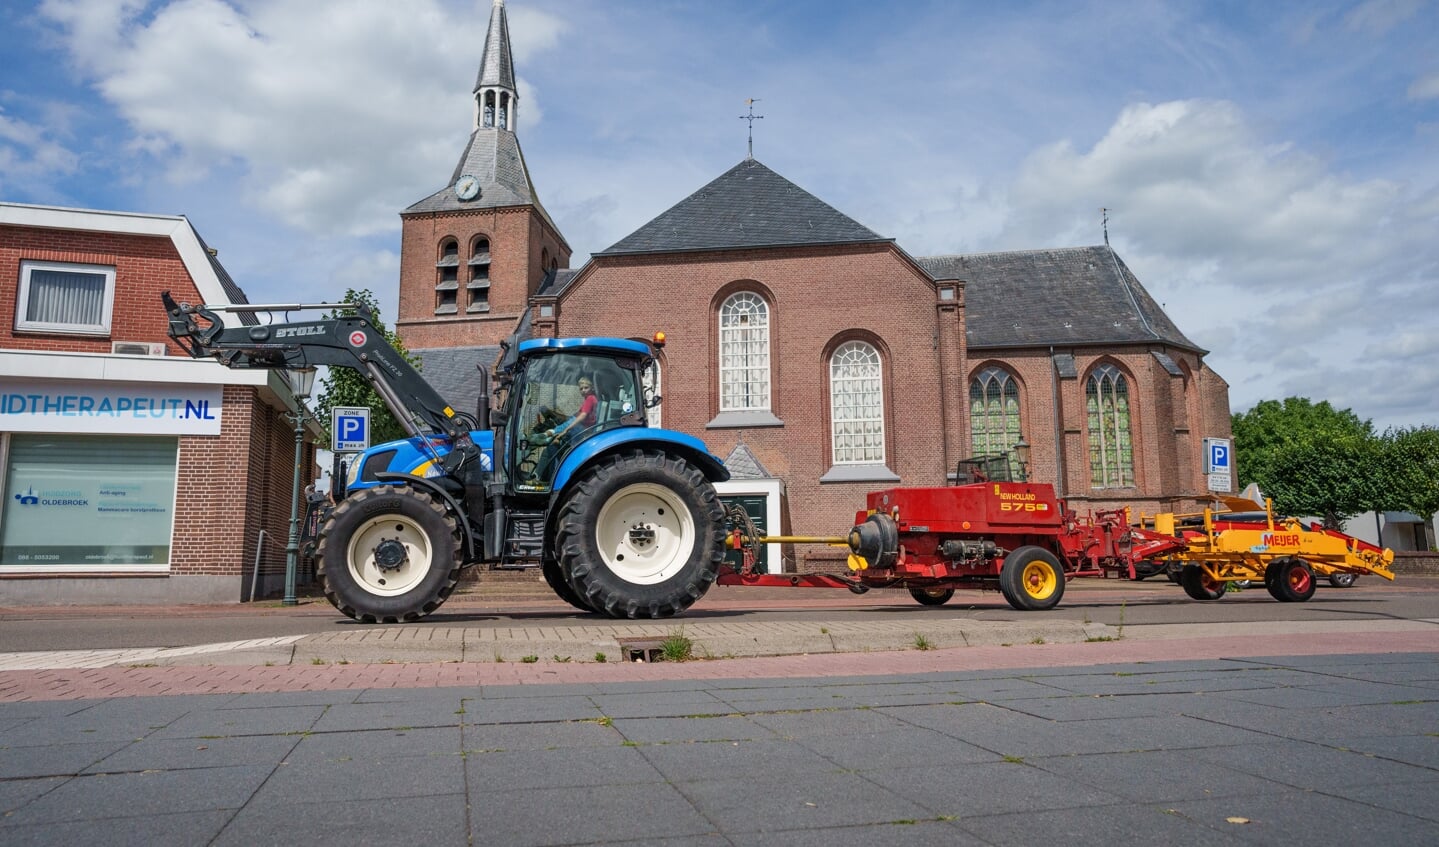 De Dorpskerk in Oldebroek, waar de burgemeester bedreigd is vanwege het weghalen van vlaggen van protesterende boeren.